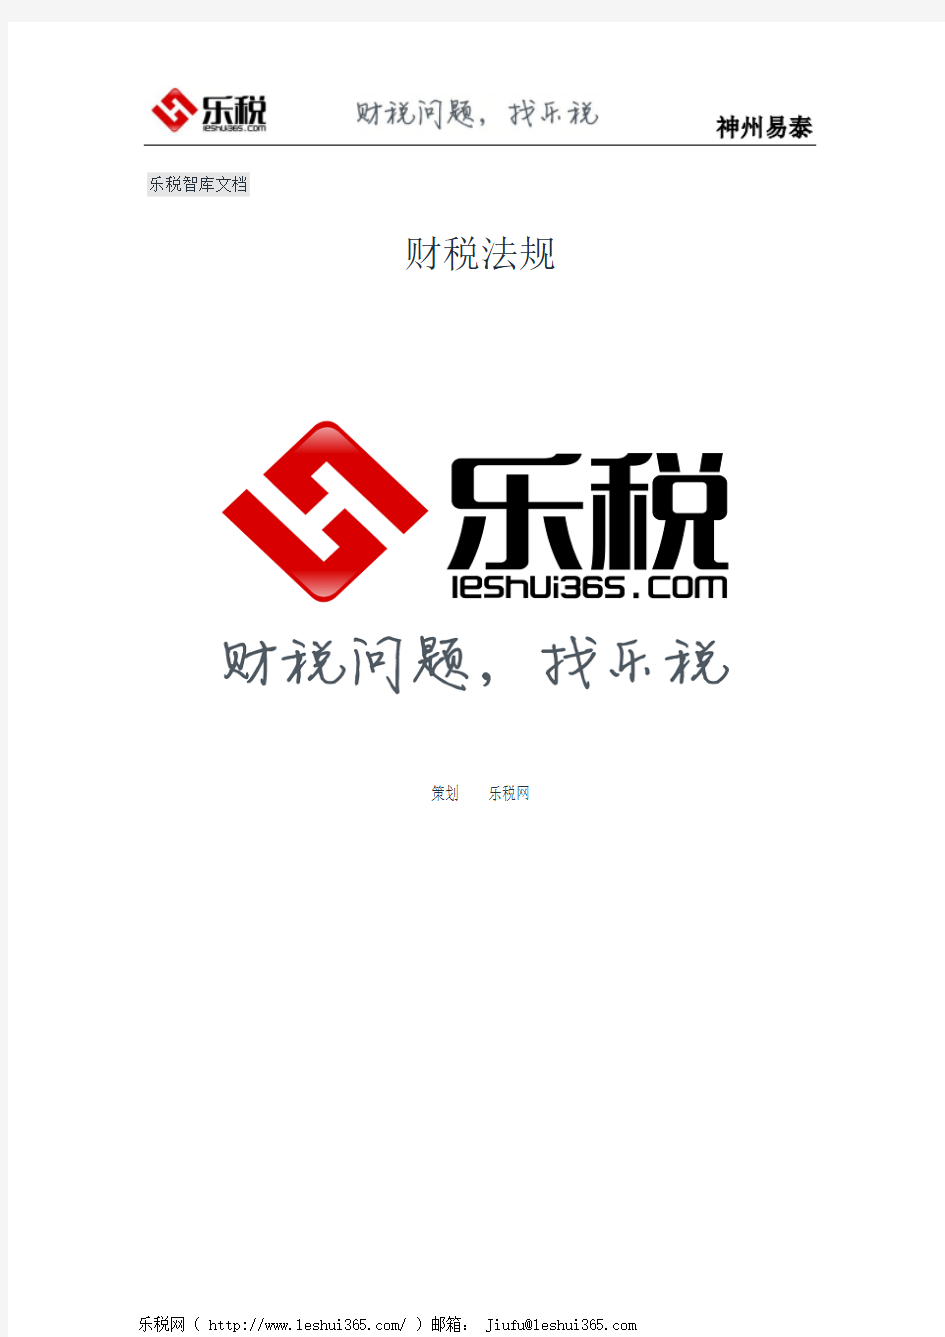 上海市国家税务局上海市地方税务局关于上海市税务系统办税服务厅